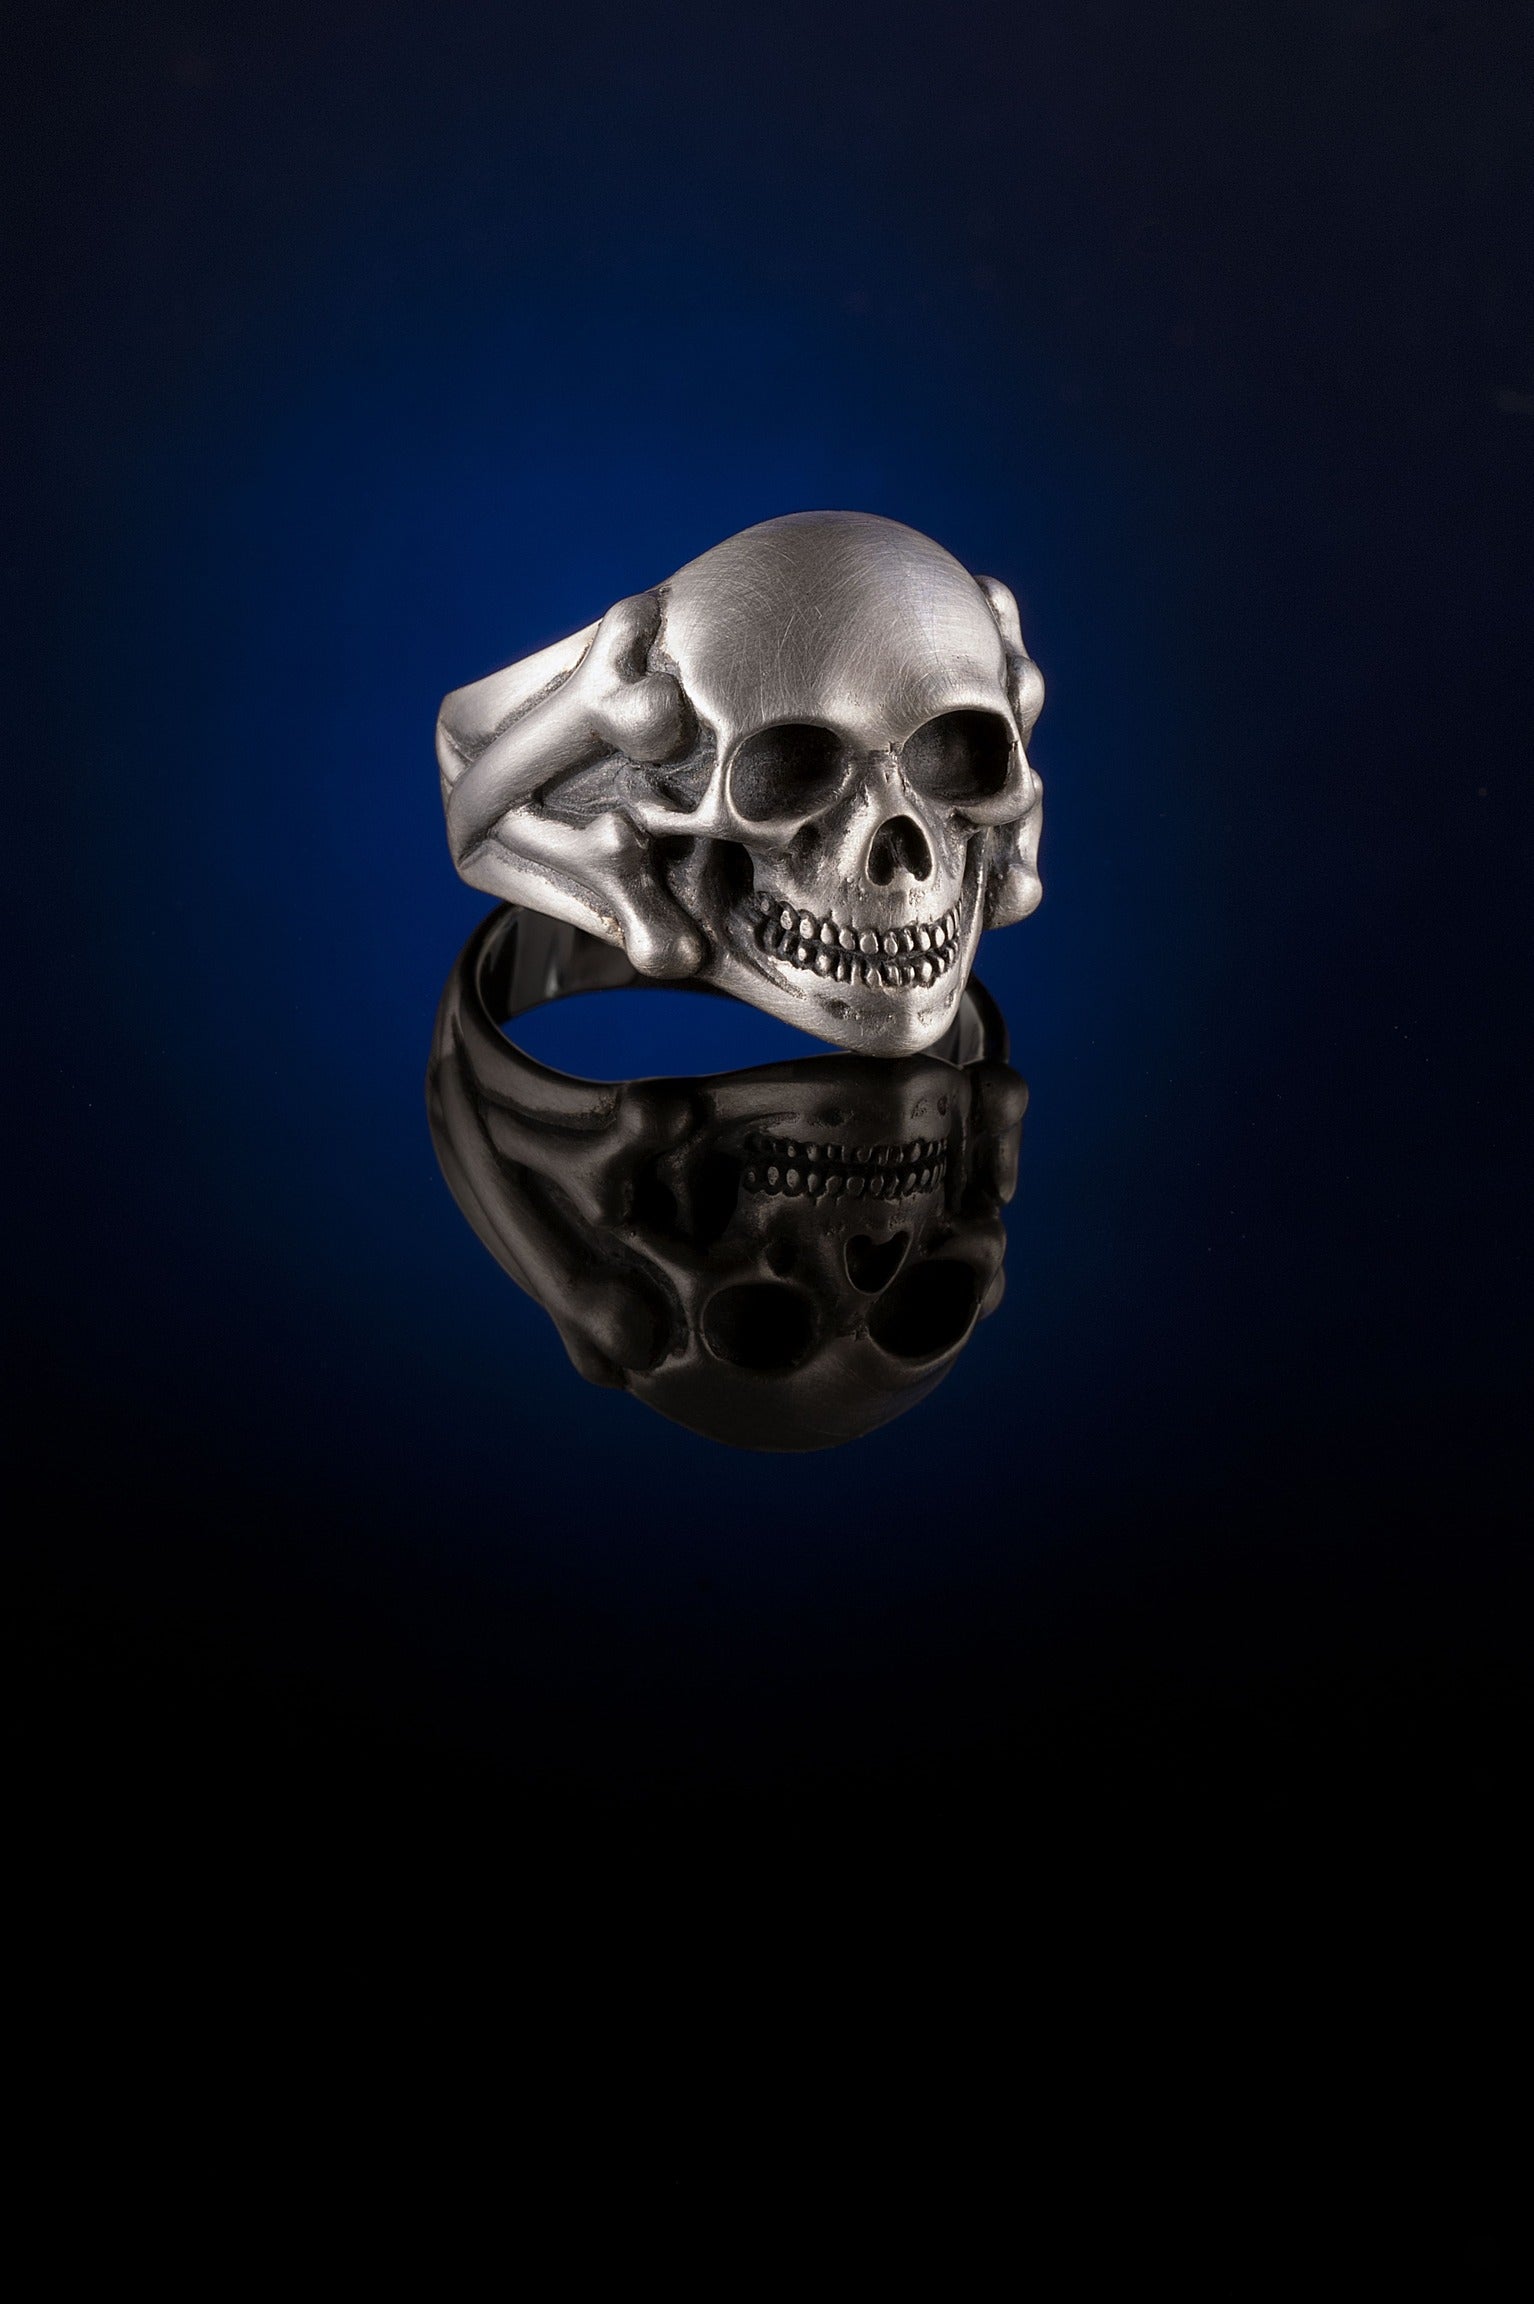 Skull & Bones Ring